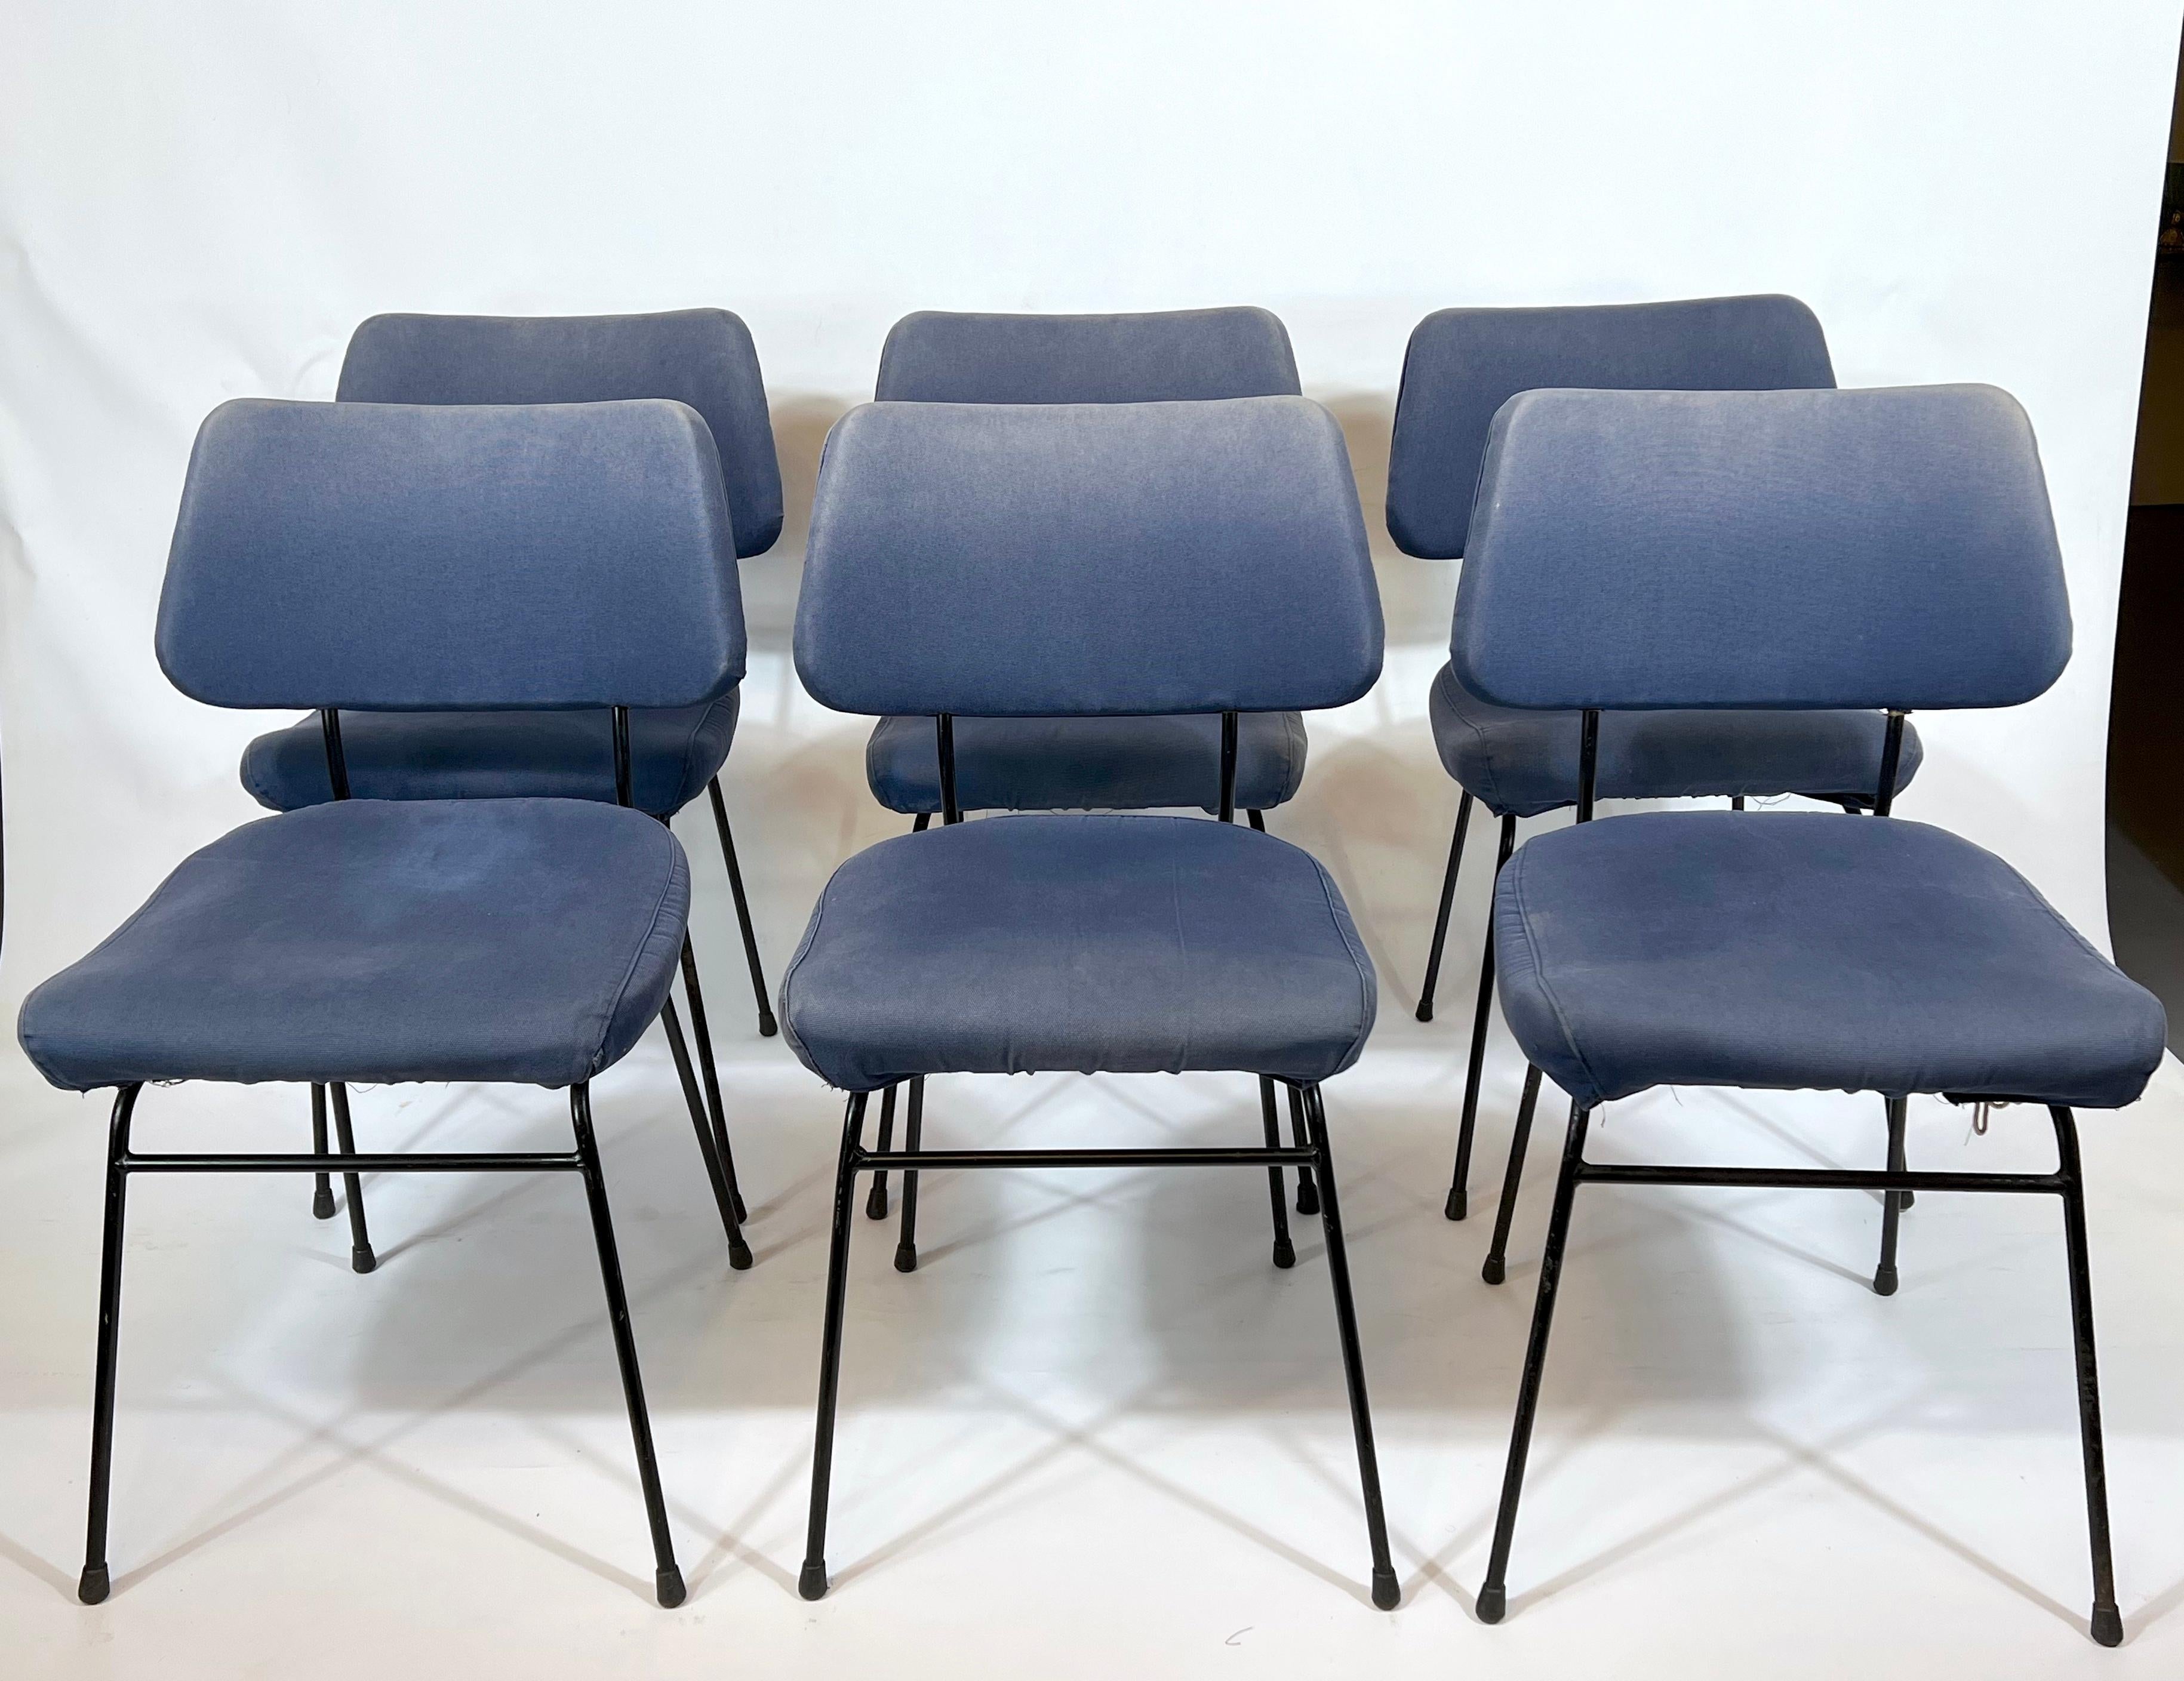 Bon état vintage avec traces d'âge et d'utilisation pour cet ensemble de 6 chaises delfino, conçues par Erberto Carboni et produites par Arflex dans les années 50. Structure métallique. Labellisé avec la marque de fabrication du métal.